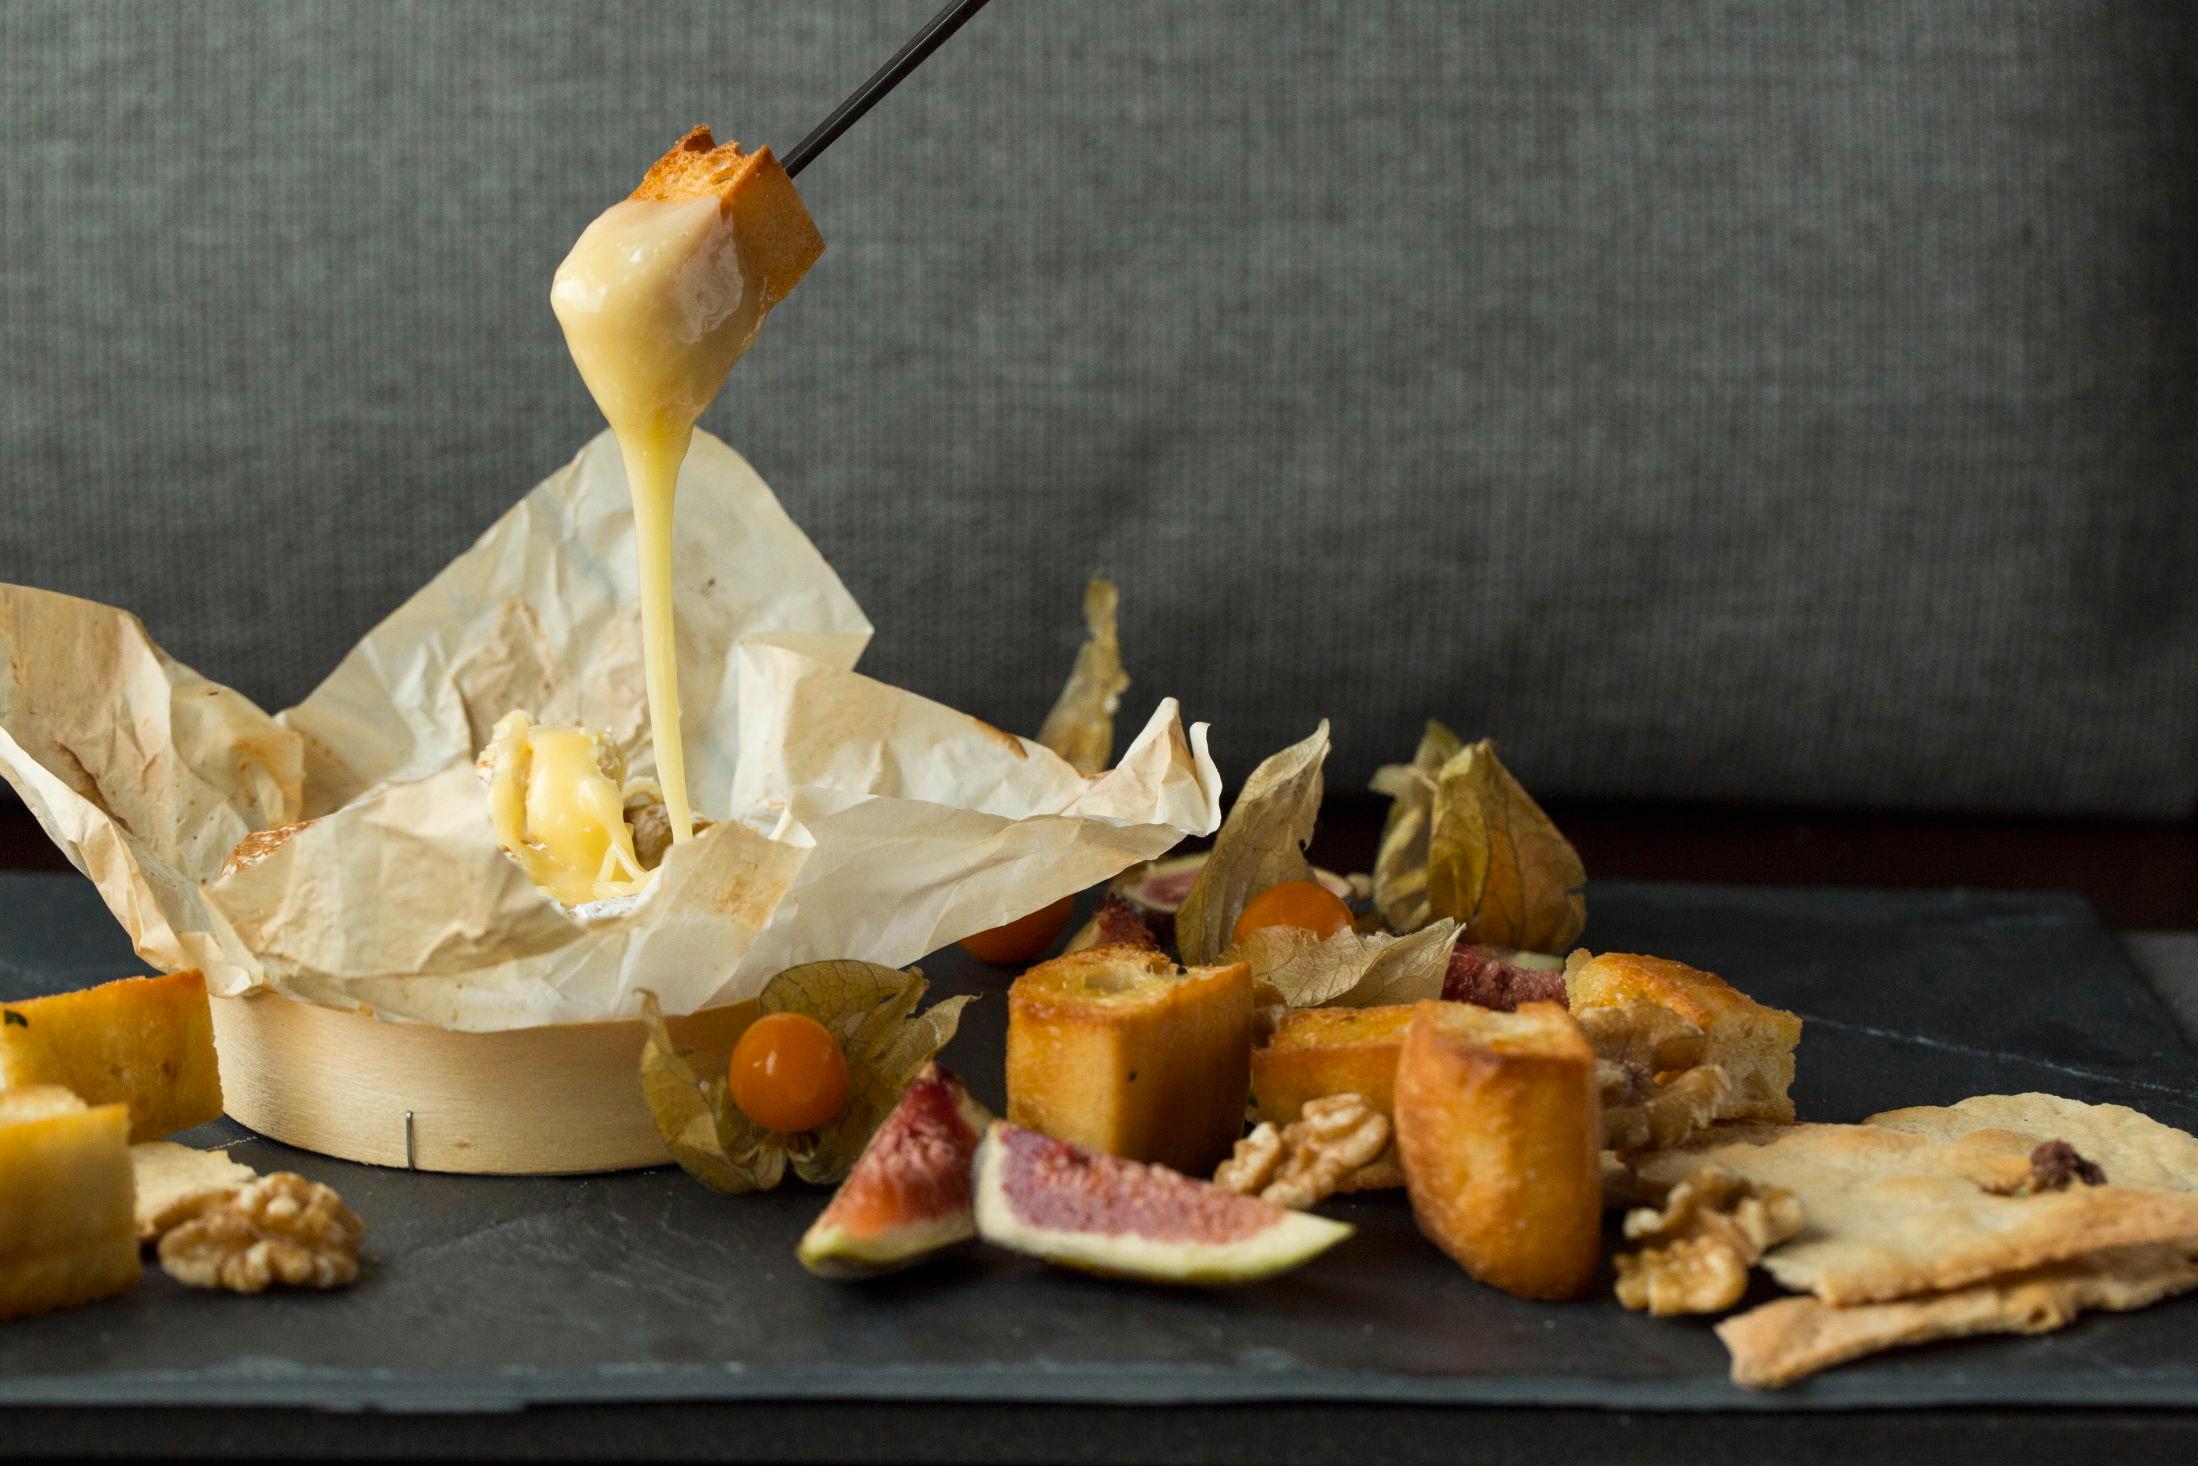 FRANSKE MATGLEDER: En av de enkleste franske matrettene du kan lage er ostefondue - bare sleng en hel camembert i ovnen og server med godt brød og fruktbiter. Foto: Sara Johannessen/VG.